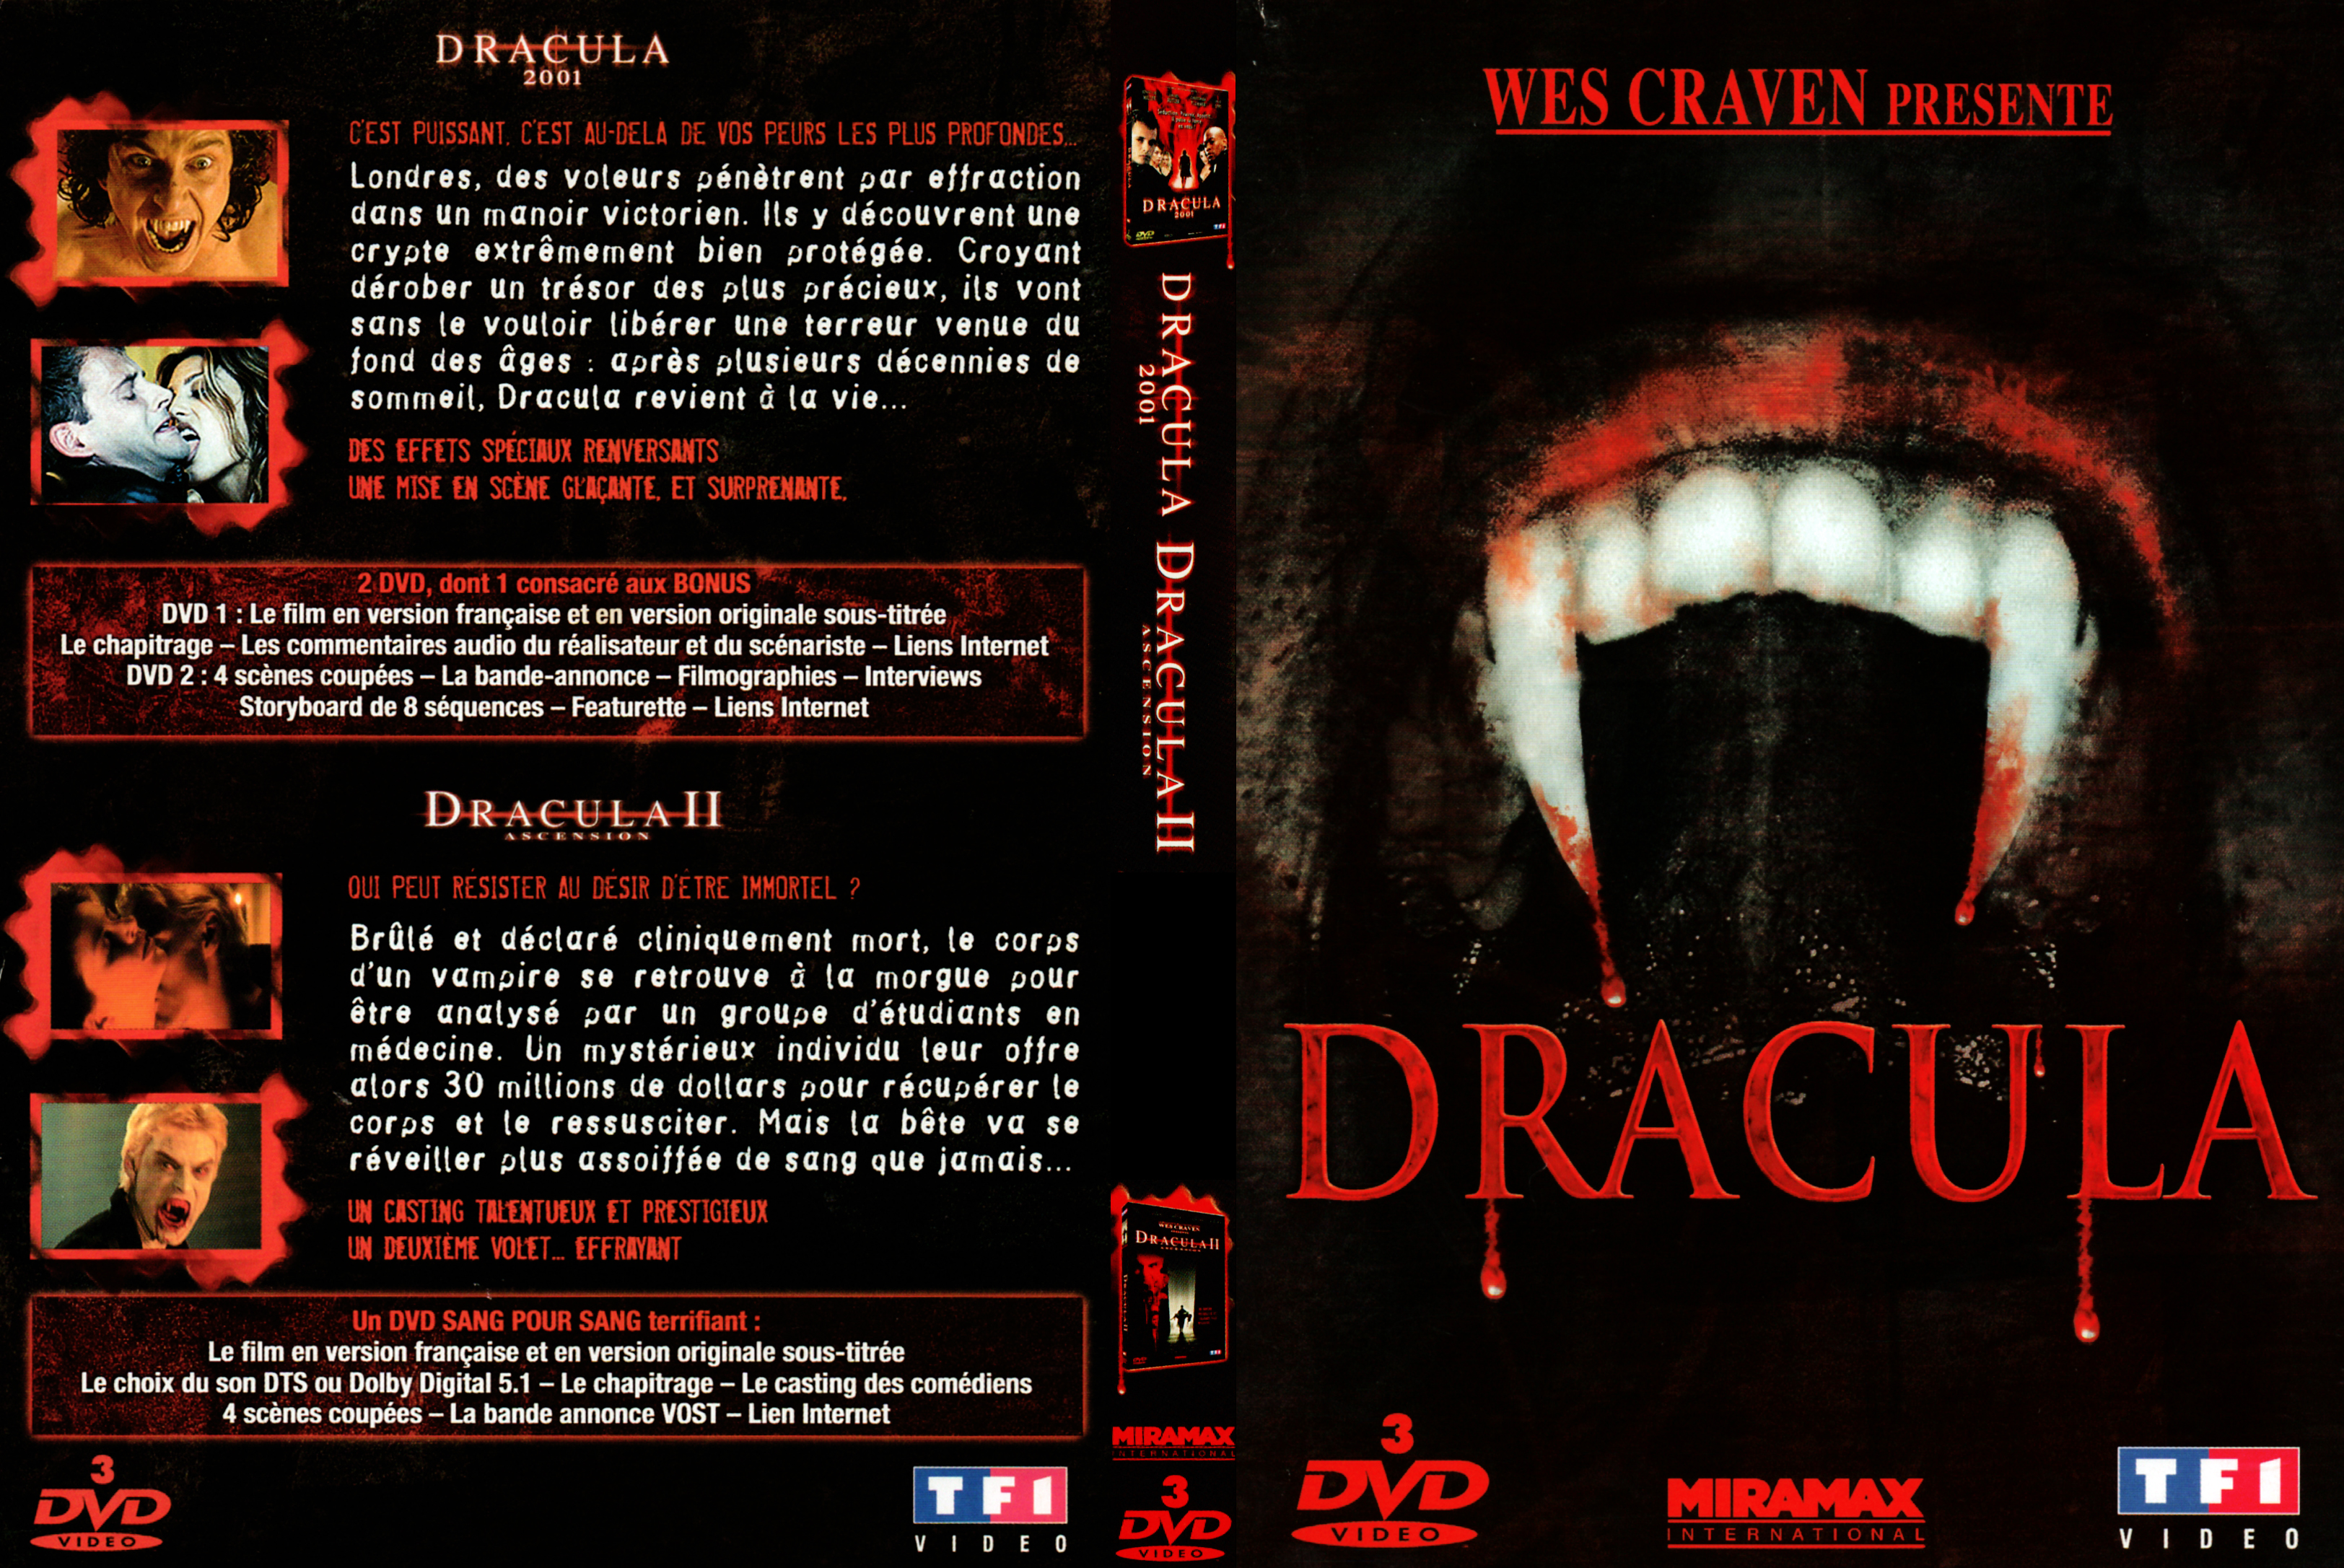 Jaquette DVD Dracula 2001 + Dracula 2 ascension